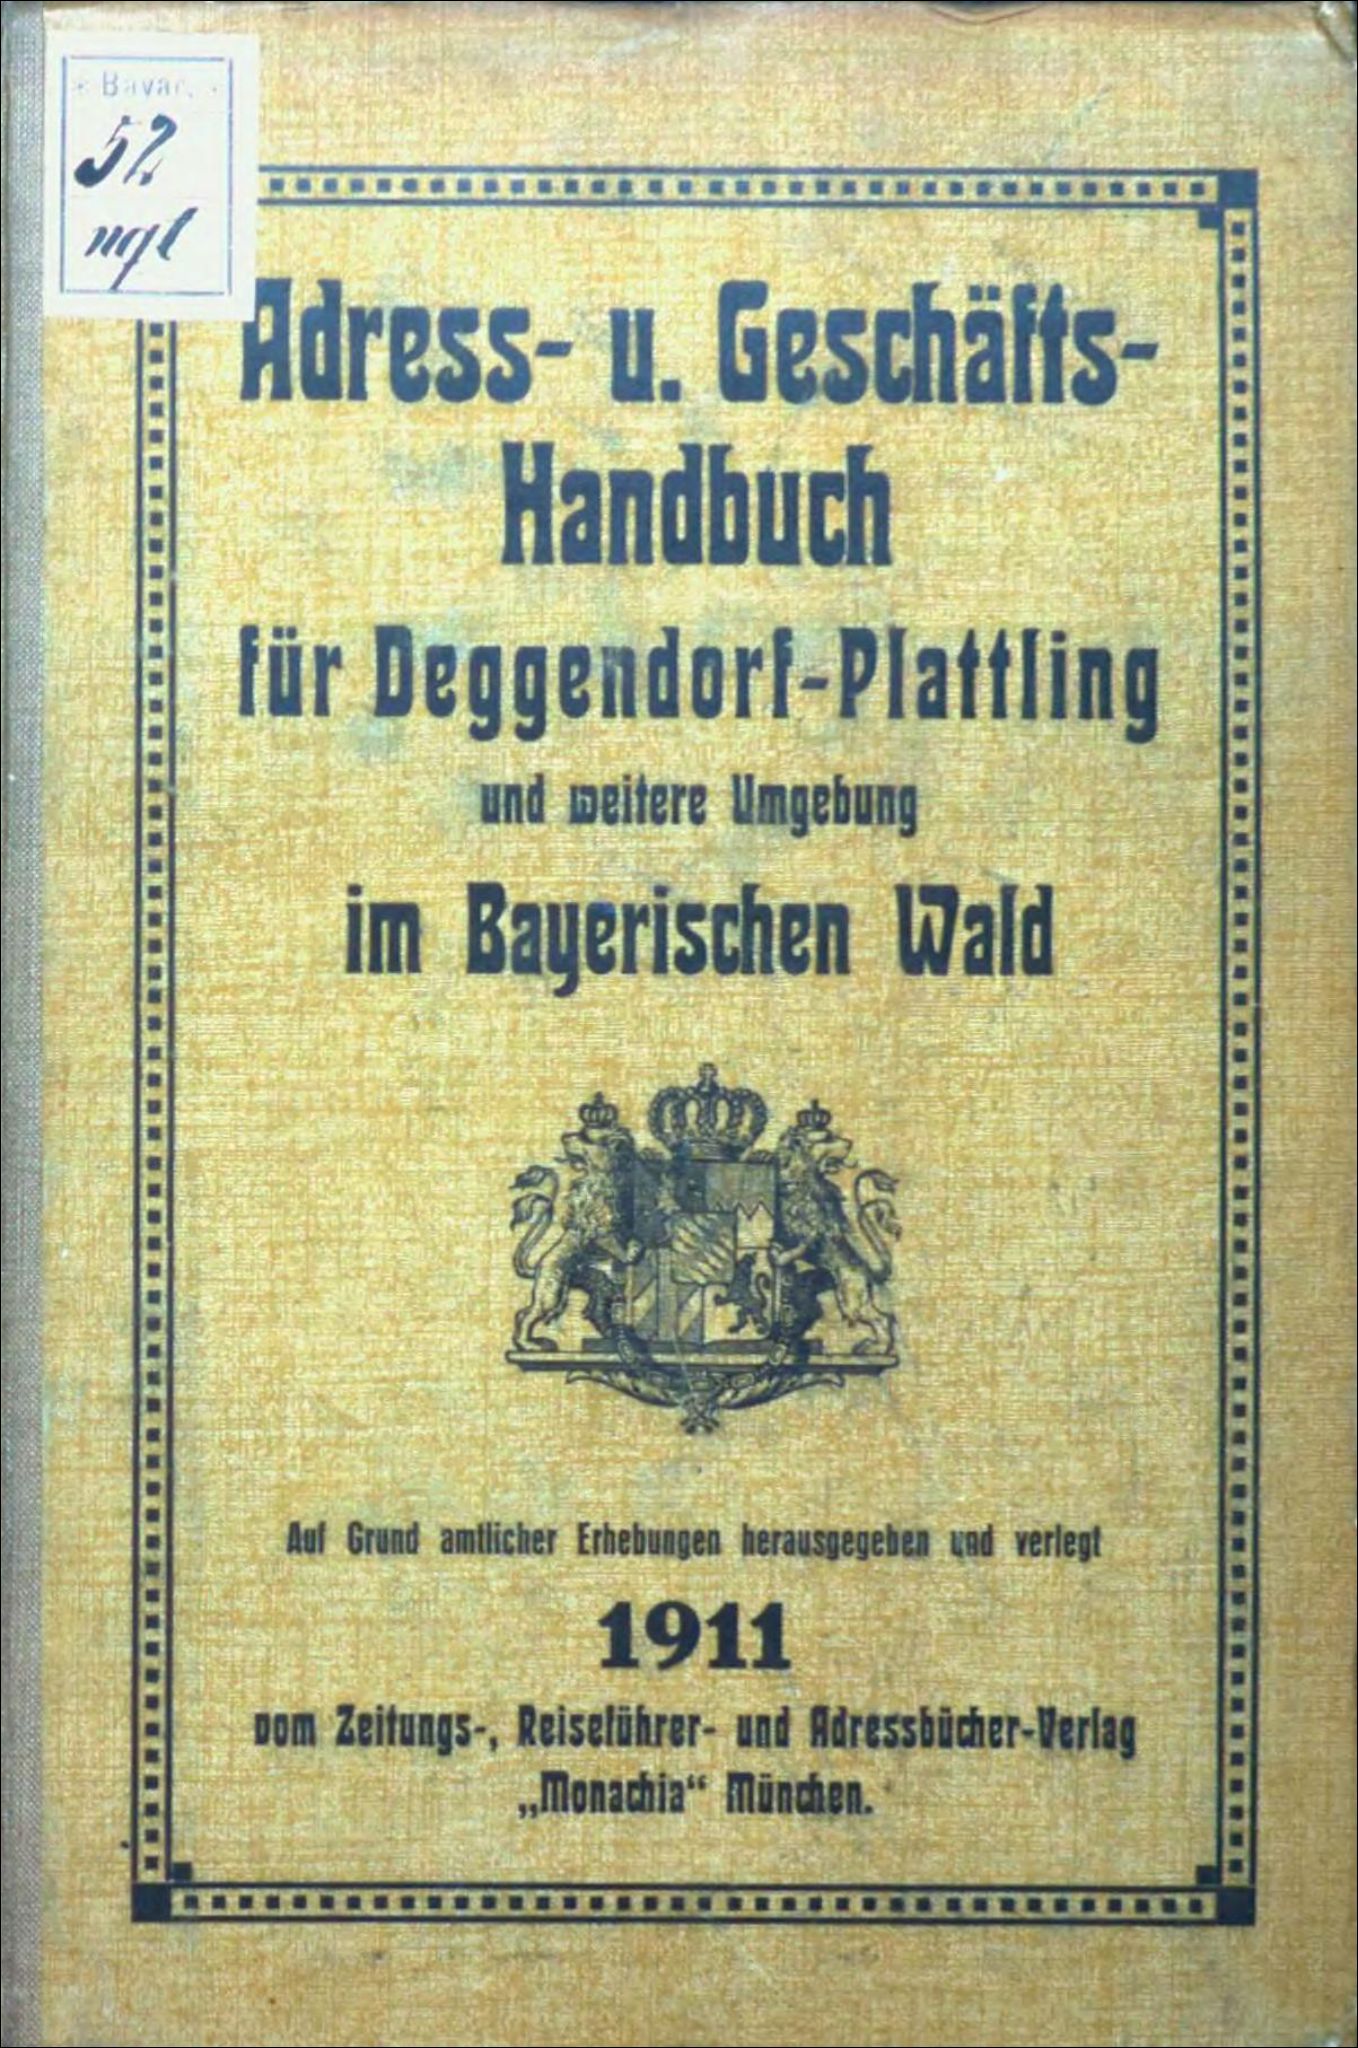 Adress- u. Geschäfts-Handbuch für Deggendorf–Plattling und weitere Umgebung im Bayerischen Wald 1911